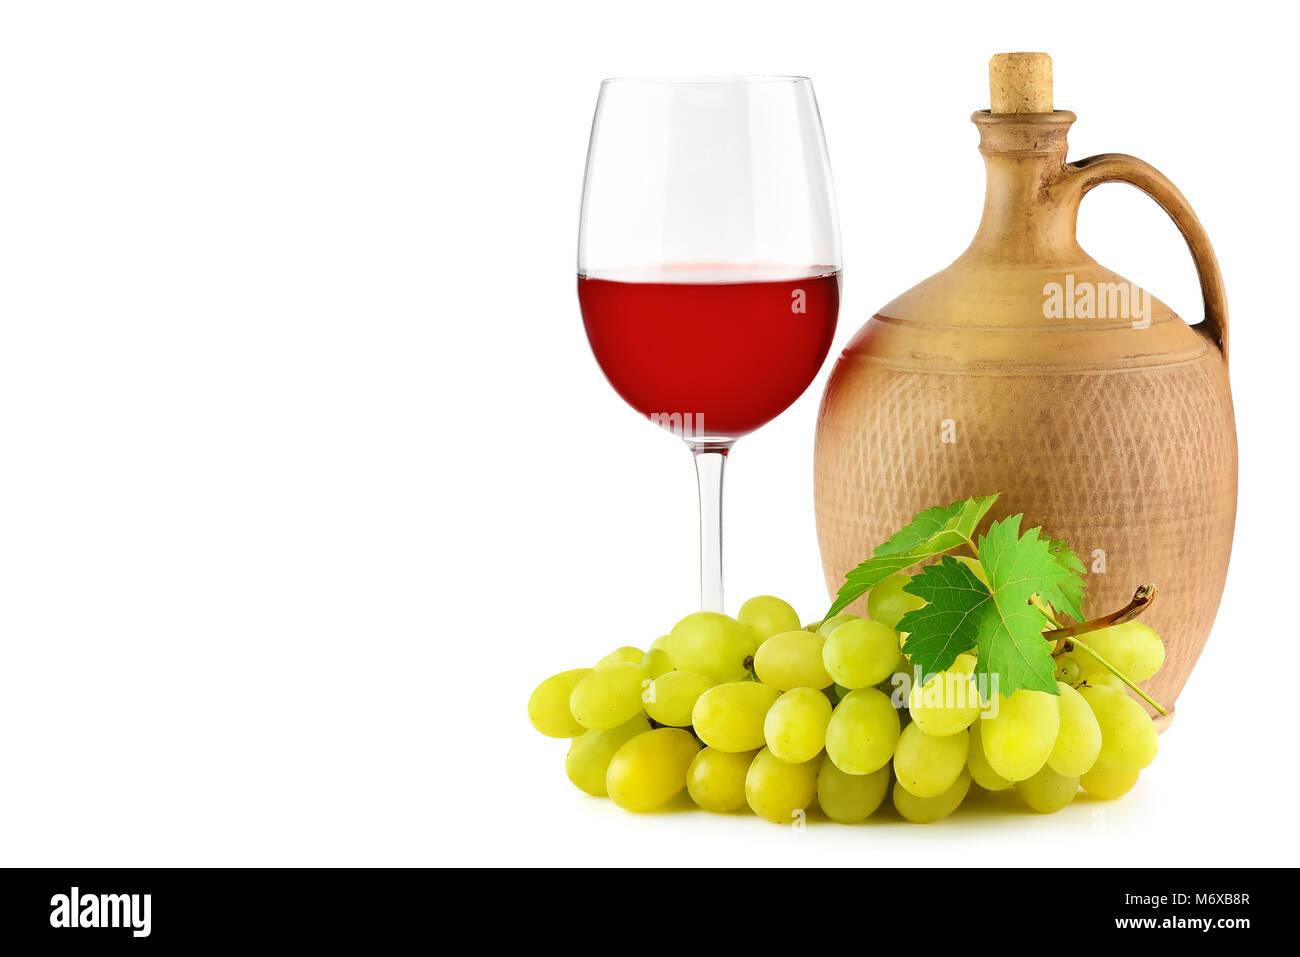 Krug mit Wein, Glas und Bündel Weintrauben auf weißem Hintergrund. Freier Platz für Text Stockfoto